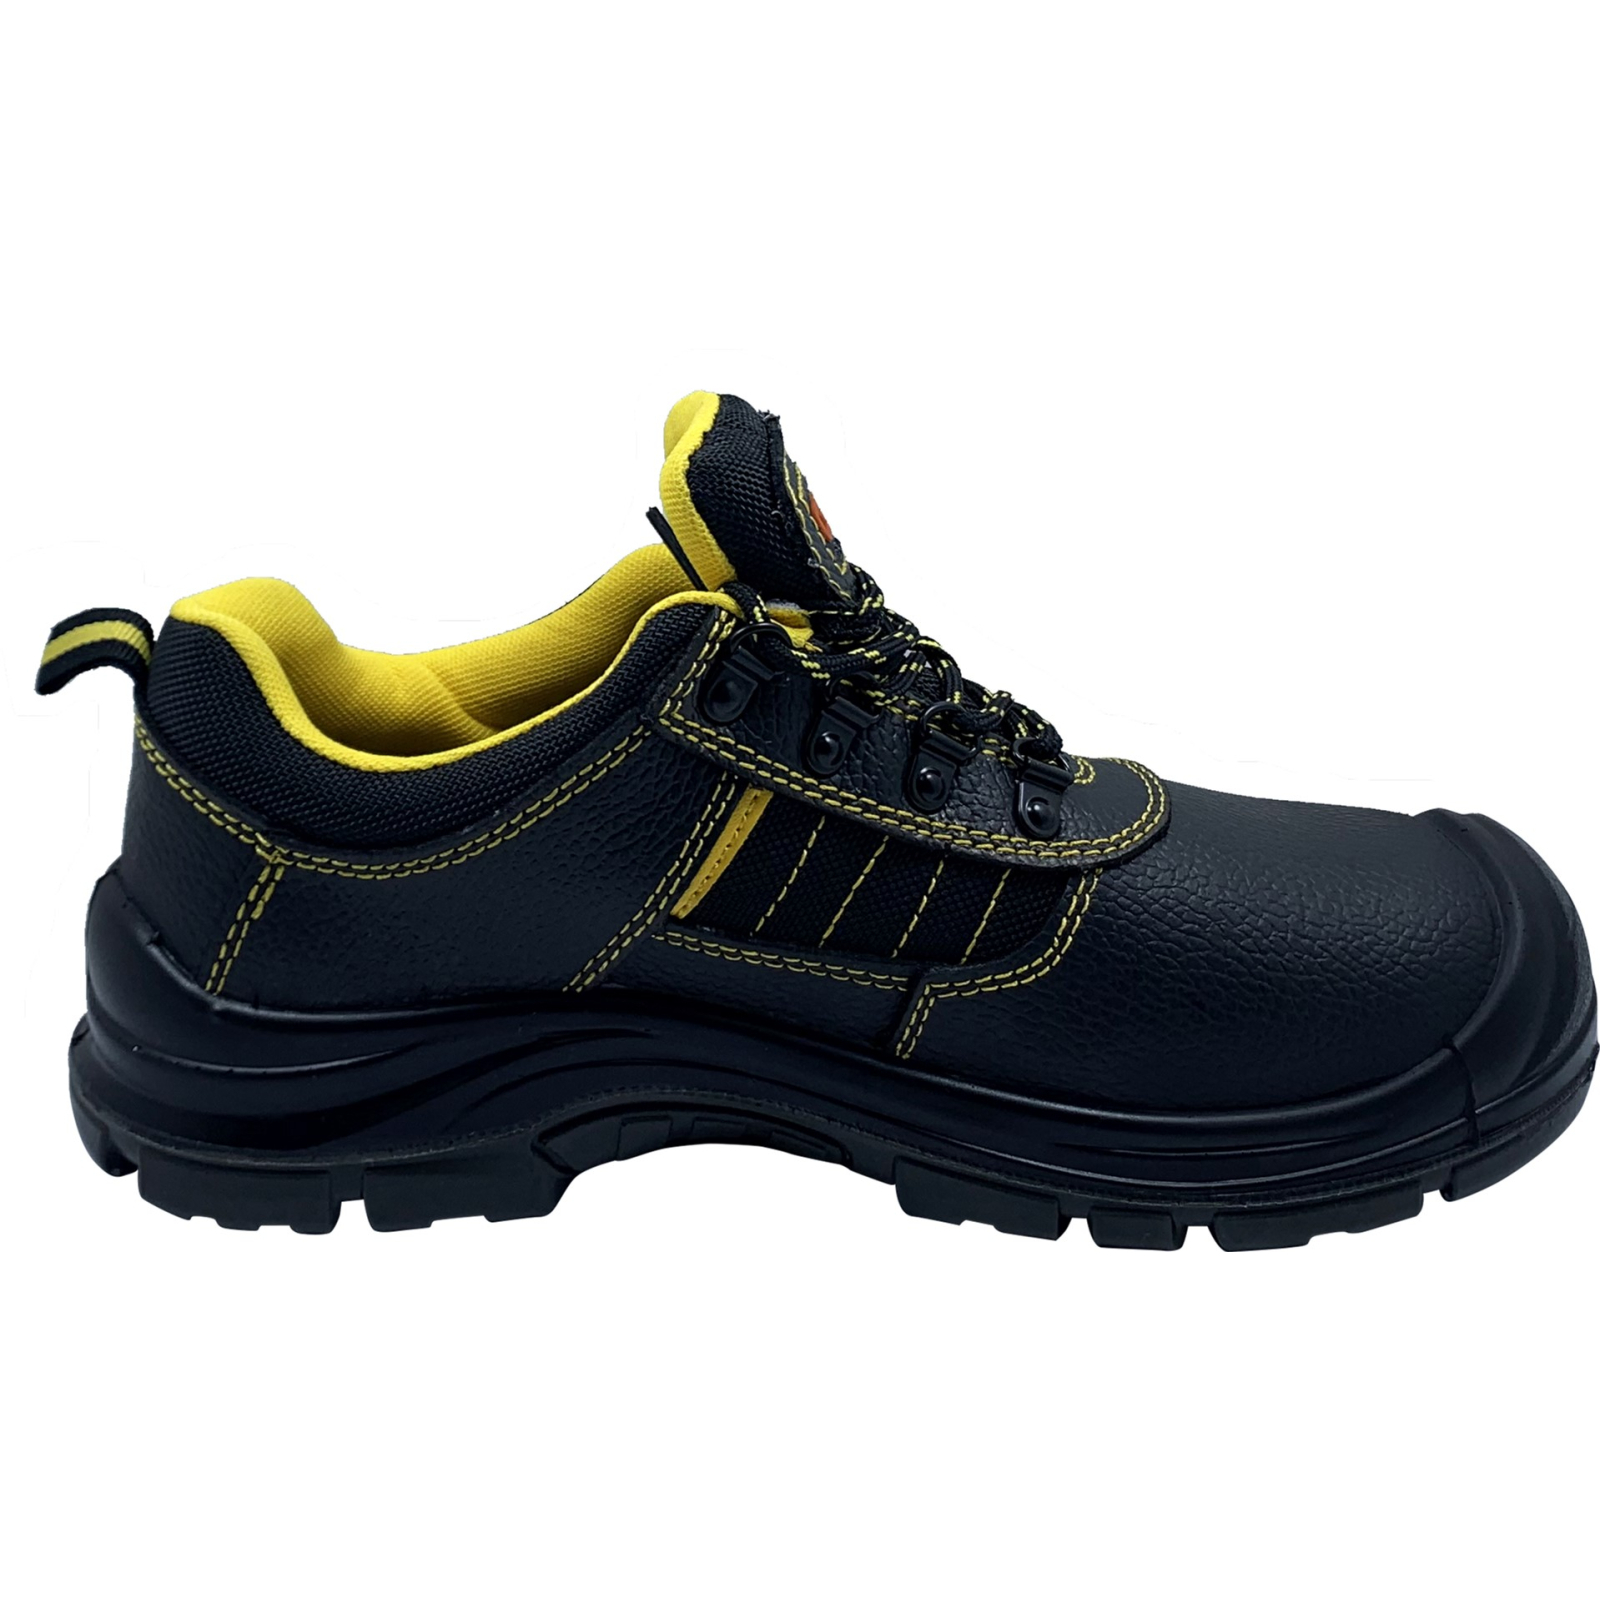 Ботинки рабочие GTM SM-078 мет. носок, р.41 с желтыми вставками (SM-078-41) изображение 2